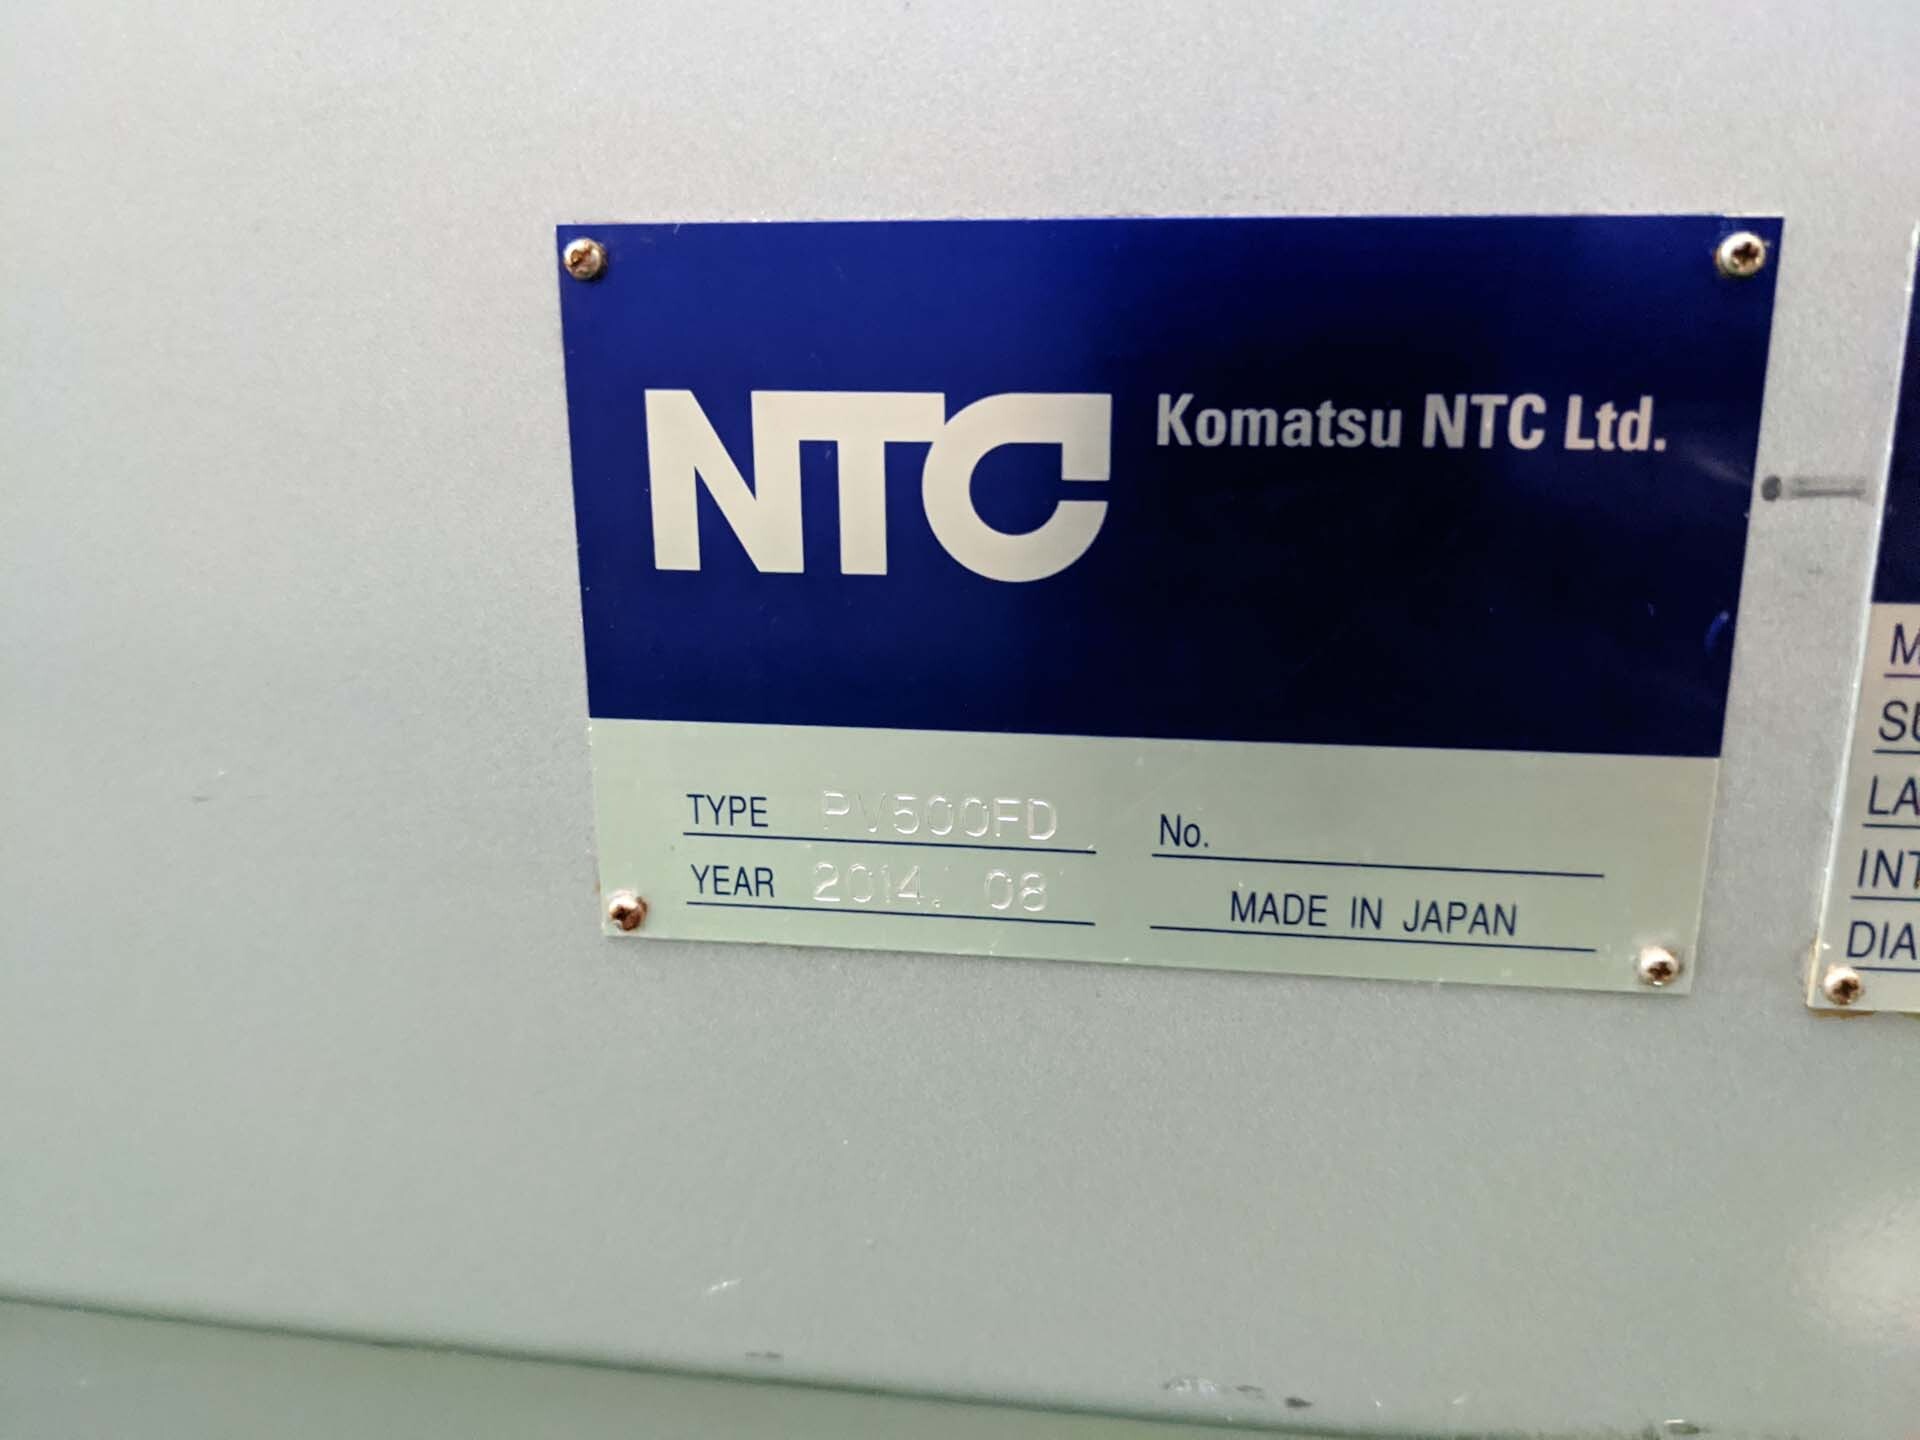 사진 사용됨 NTC / KOMATSU NTC PV500FD 판매용